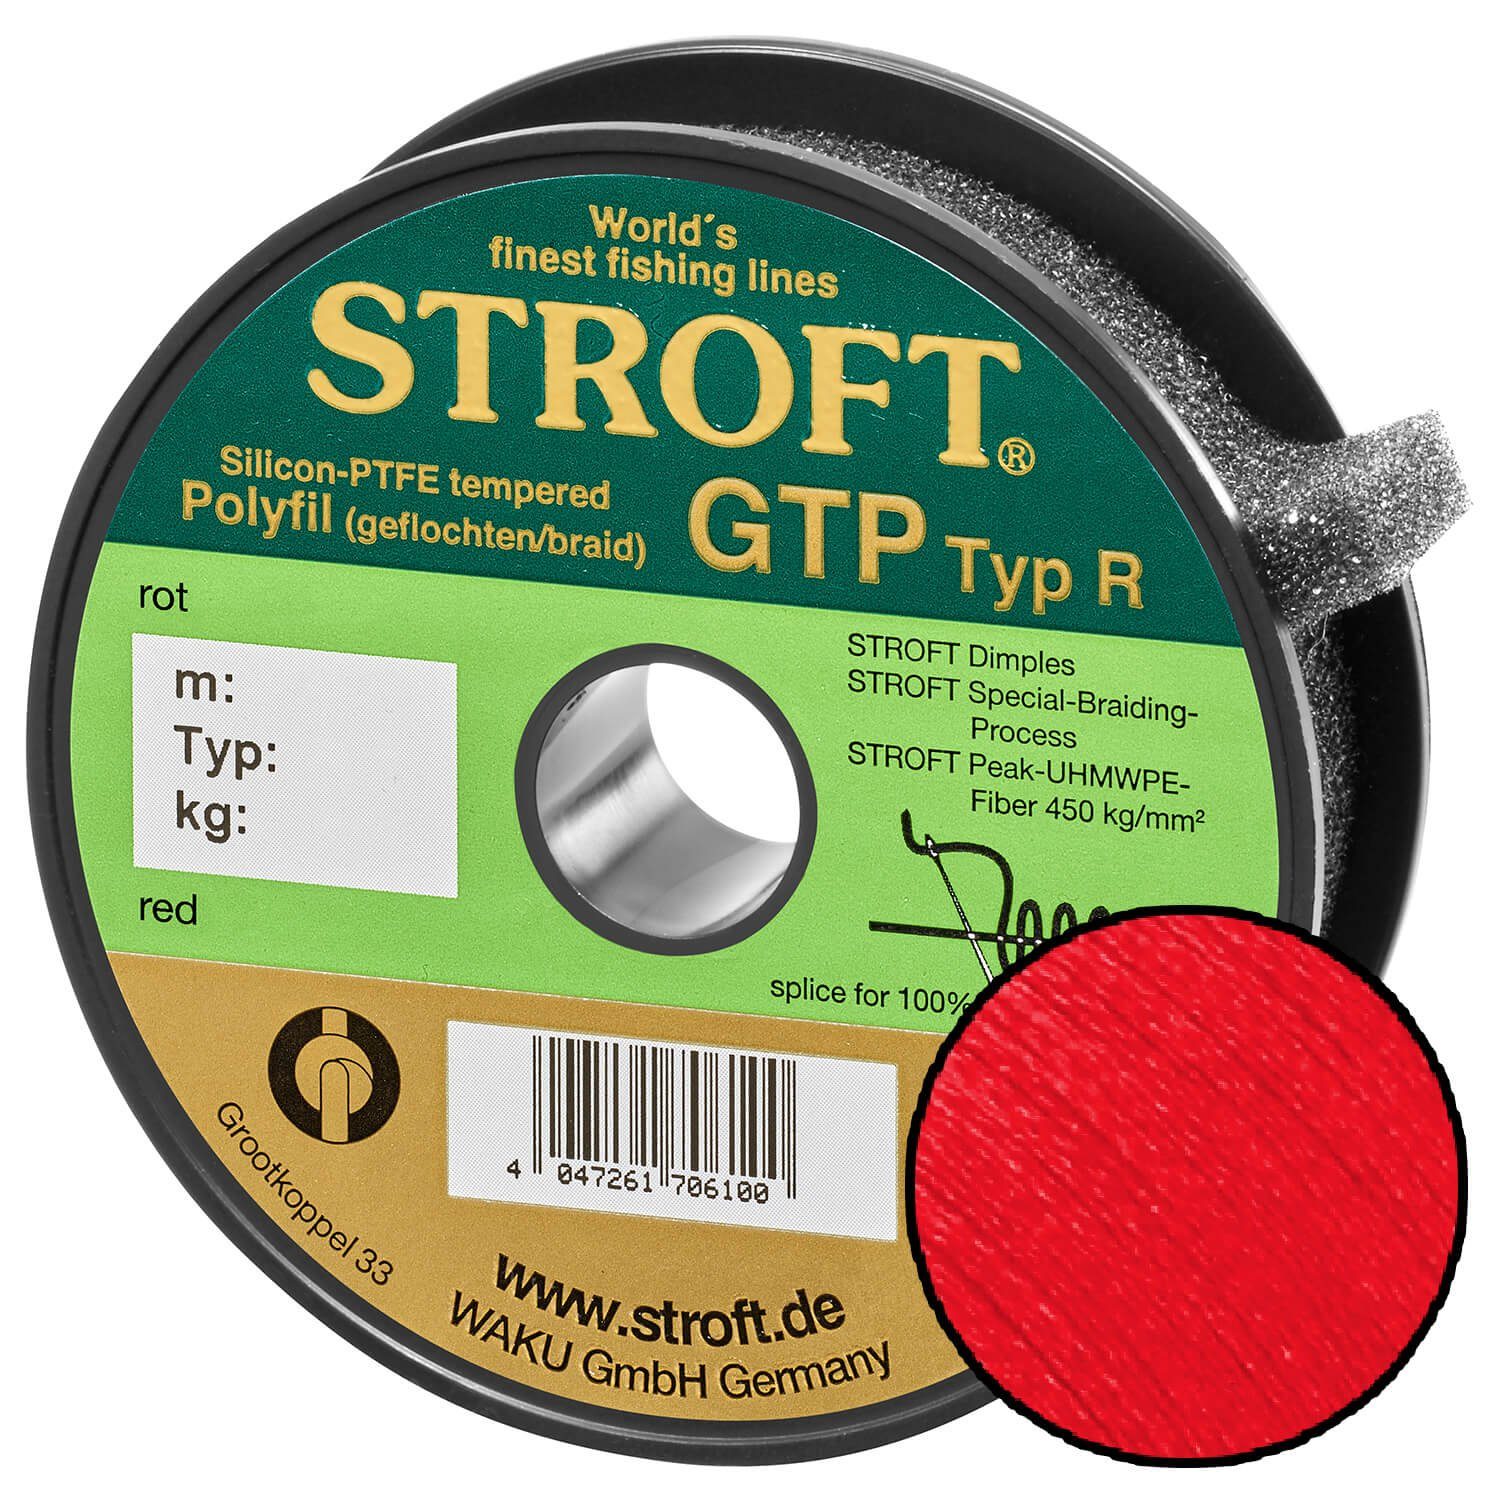 Stroft Angelschnur STROFT GTP Typ R Geflochtene Angelschnur 300m rot, 300 m Länge, 0.18 mm Fadendurchmesser, (1-St), 5.5kg Tragkraft